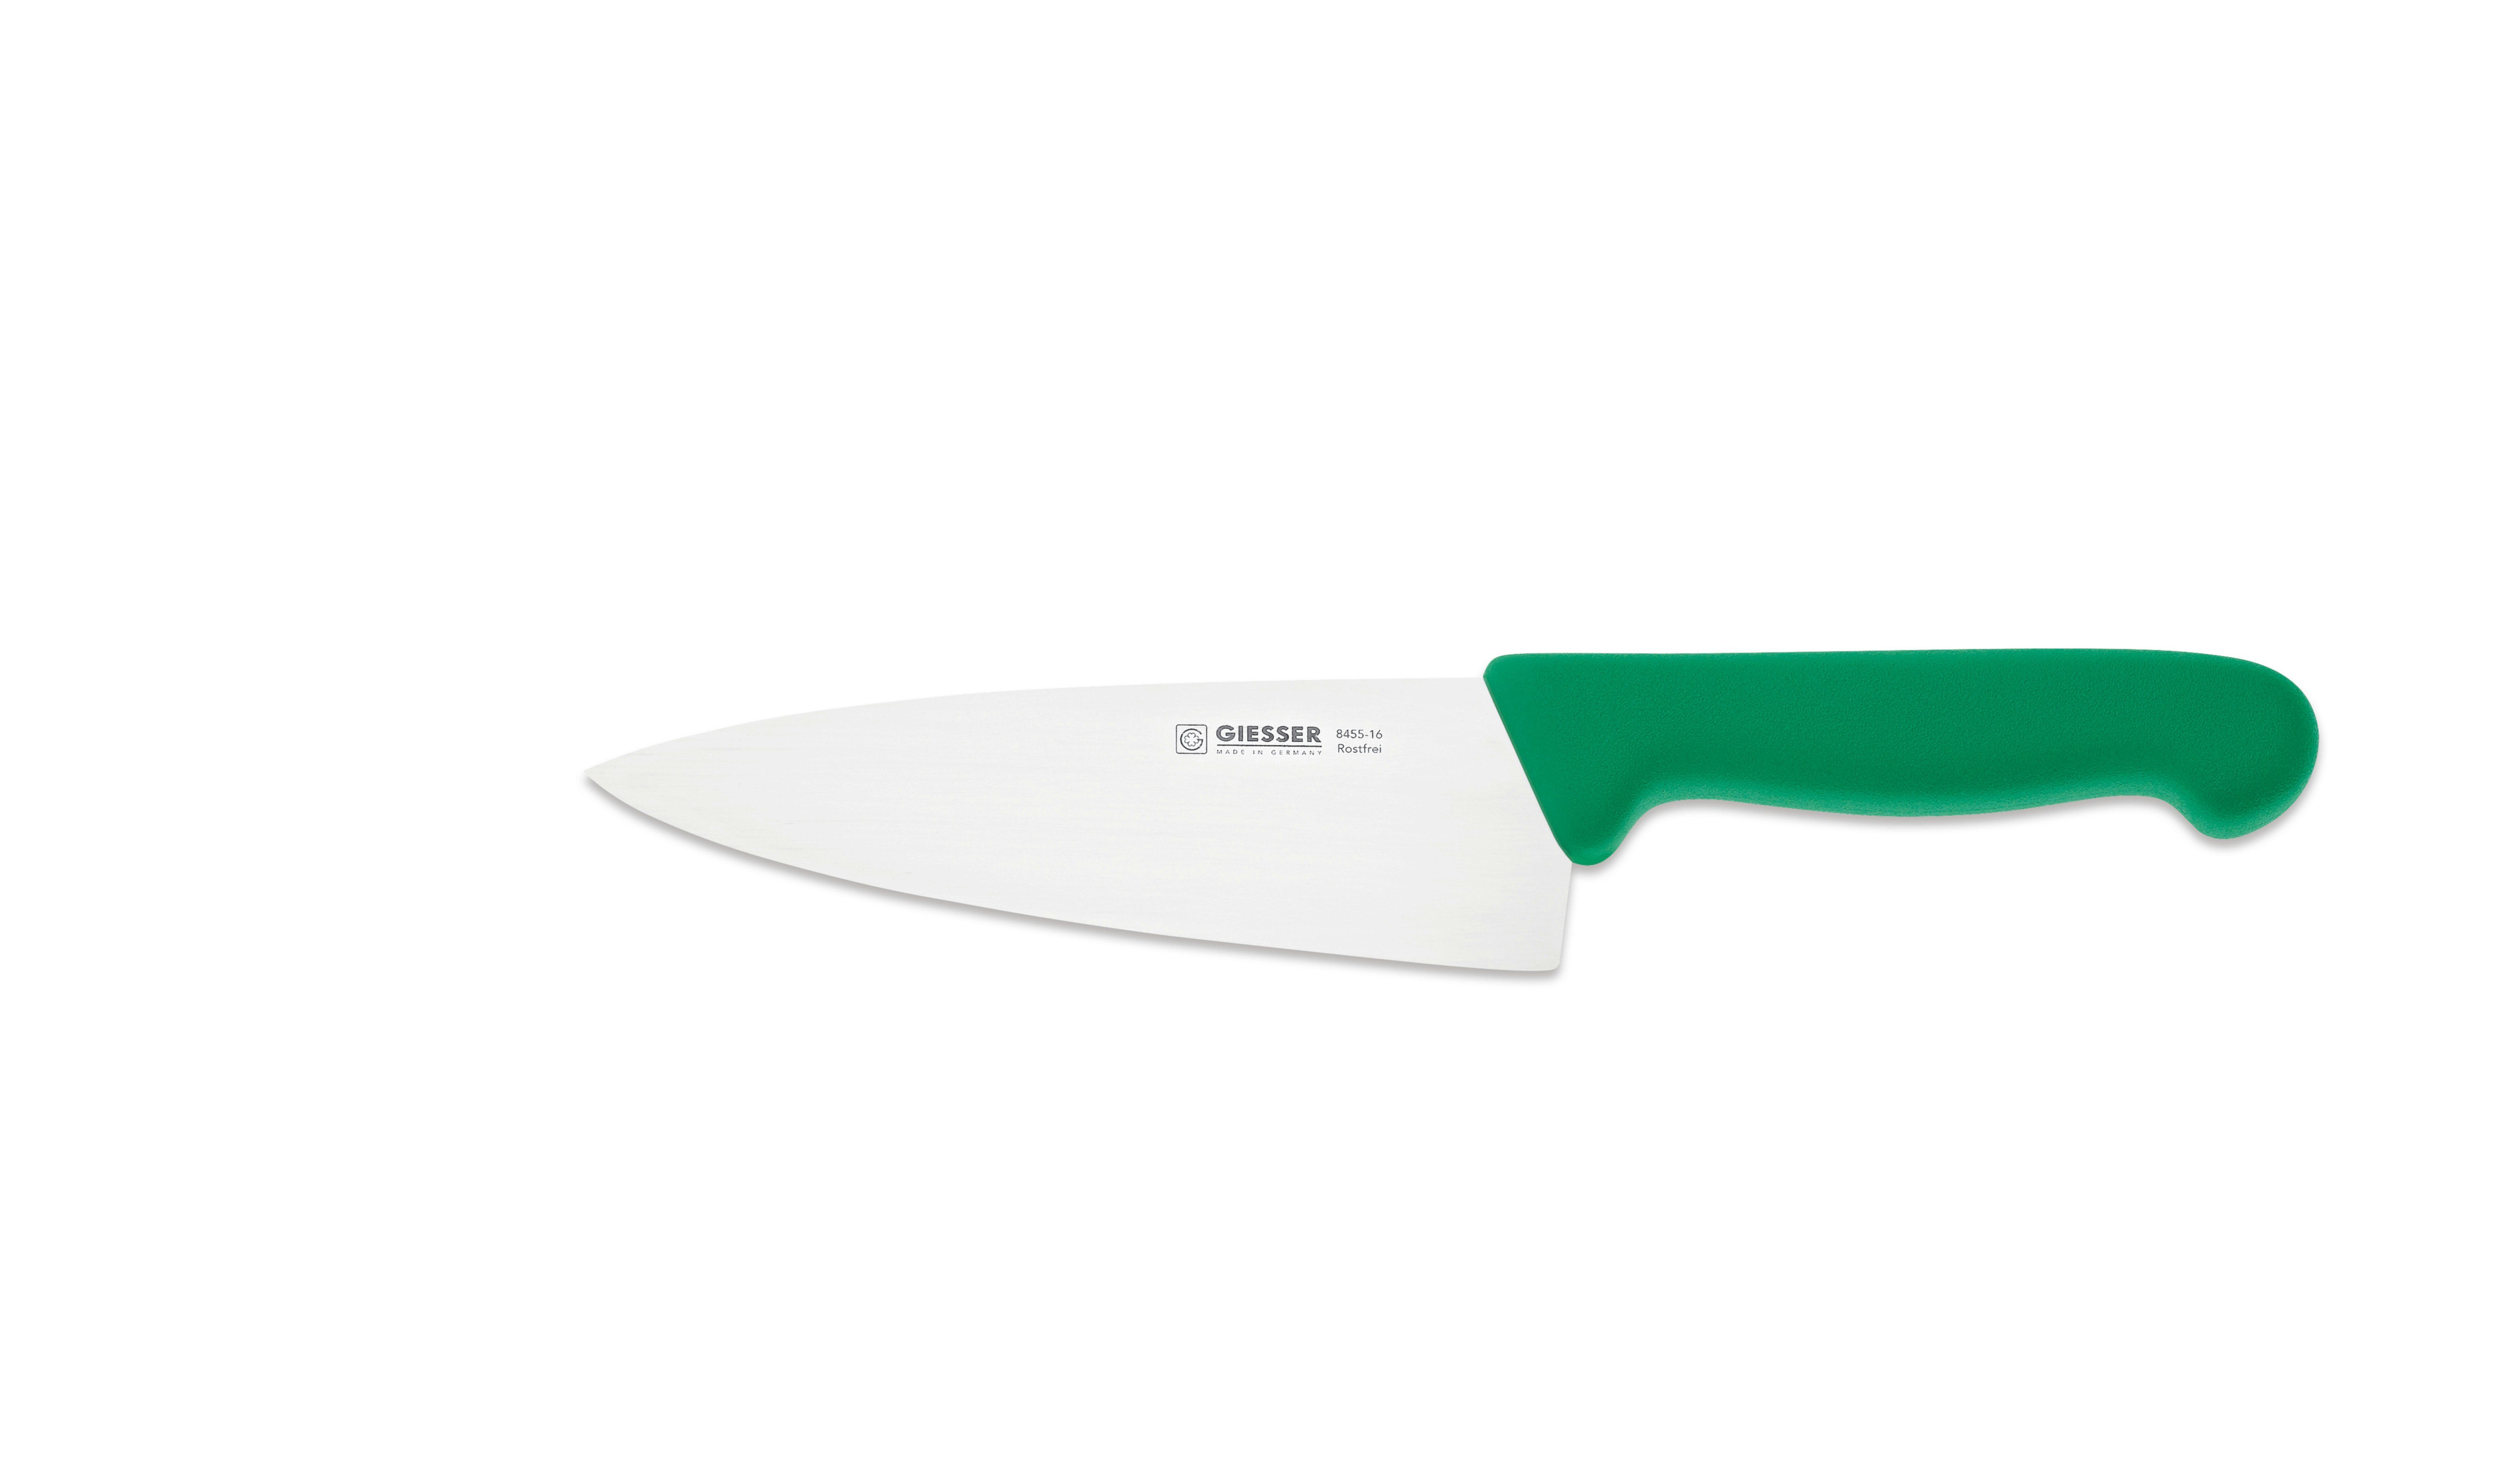 Giesser Messer Kochmesser Küchenmesser breit 8455, Rostfrei, breite Form, scharf, Handabzug, Ideal für jede Küche grün